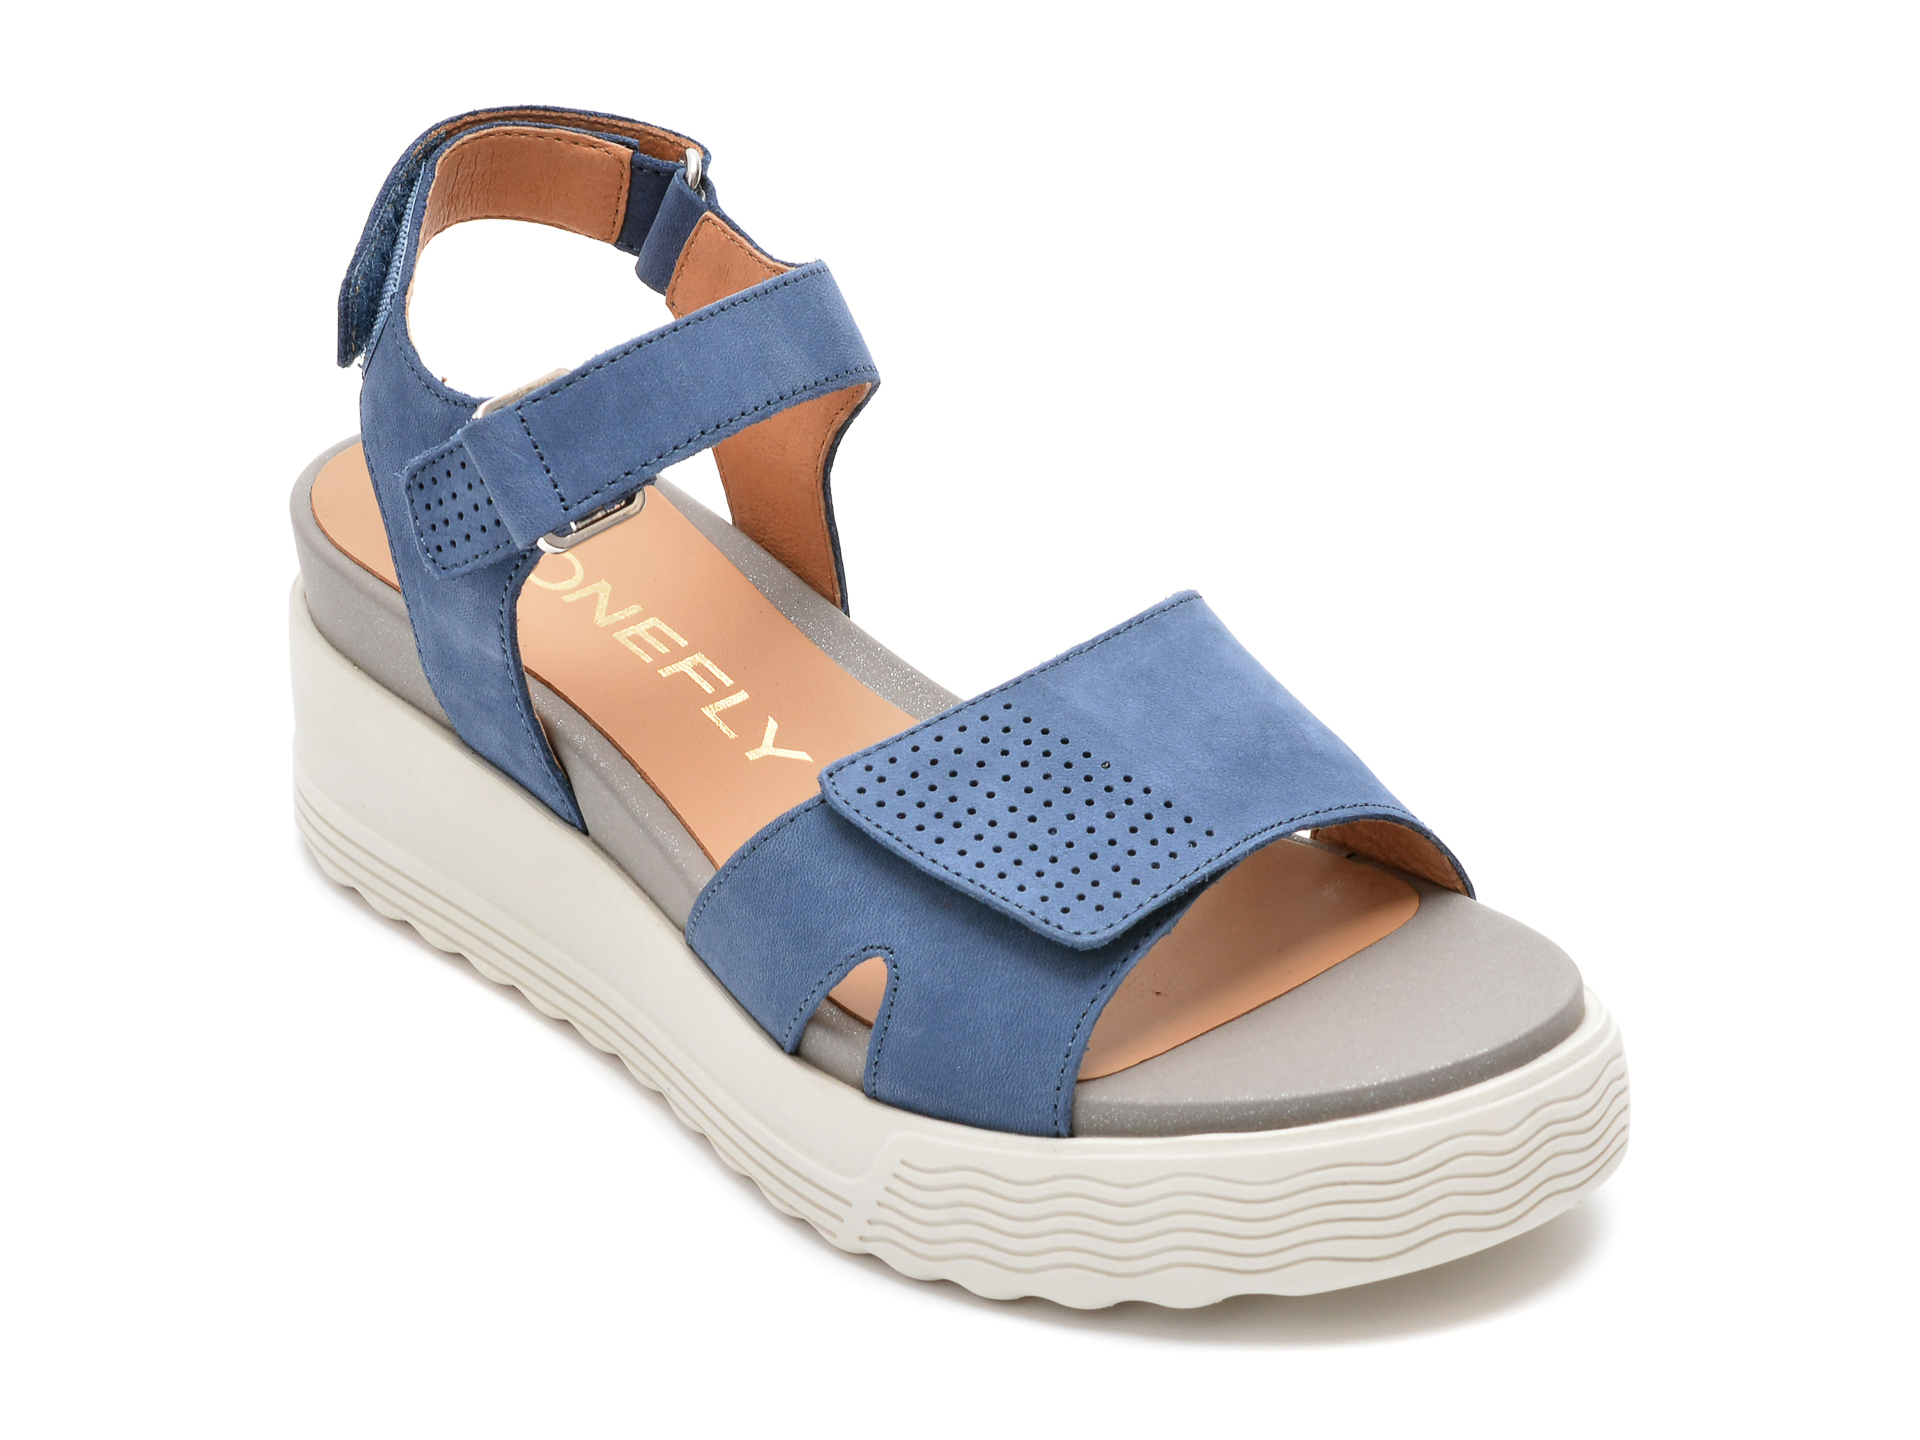 Sandale STONEFLY albastre, PARKY159, din nabuc /femei/sandale